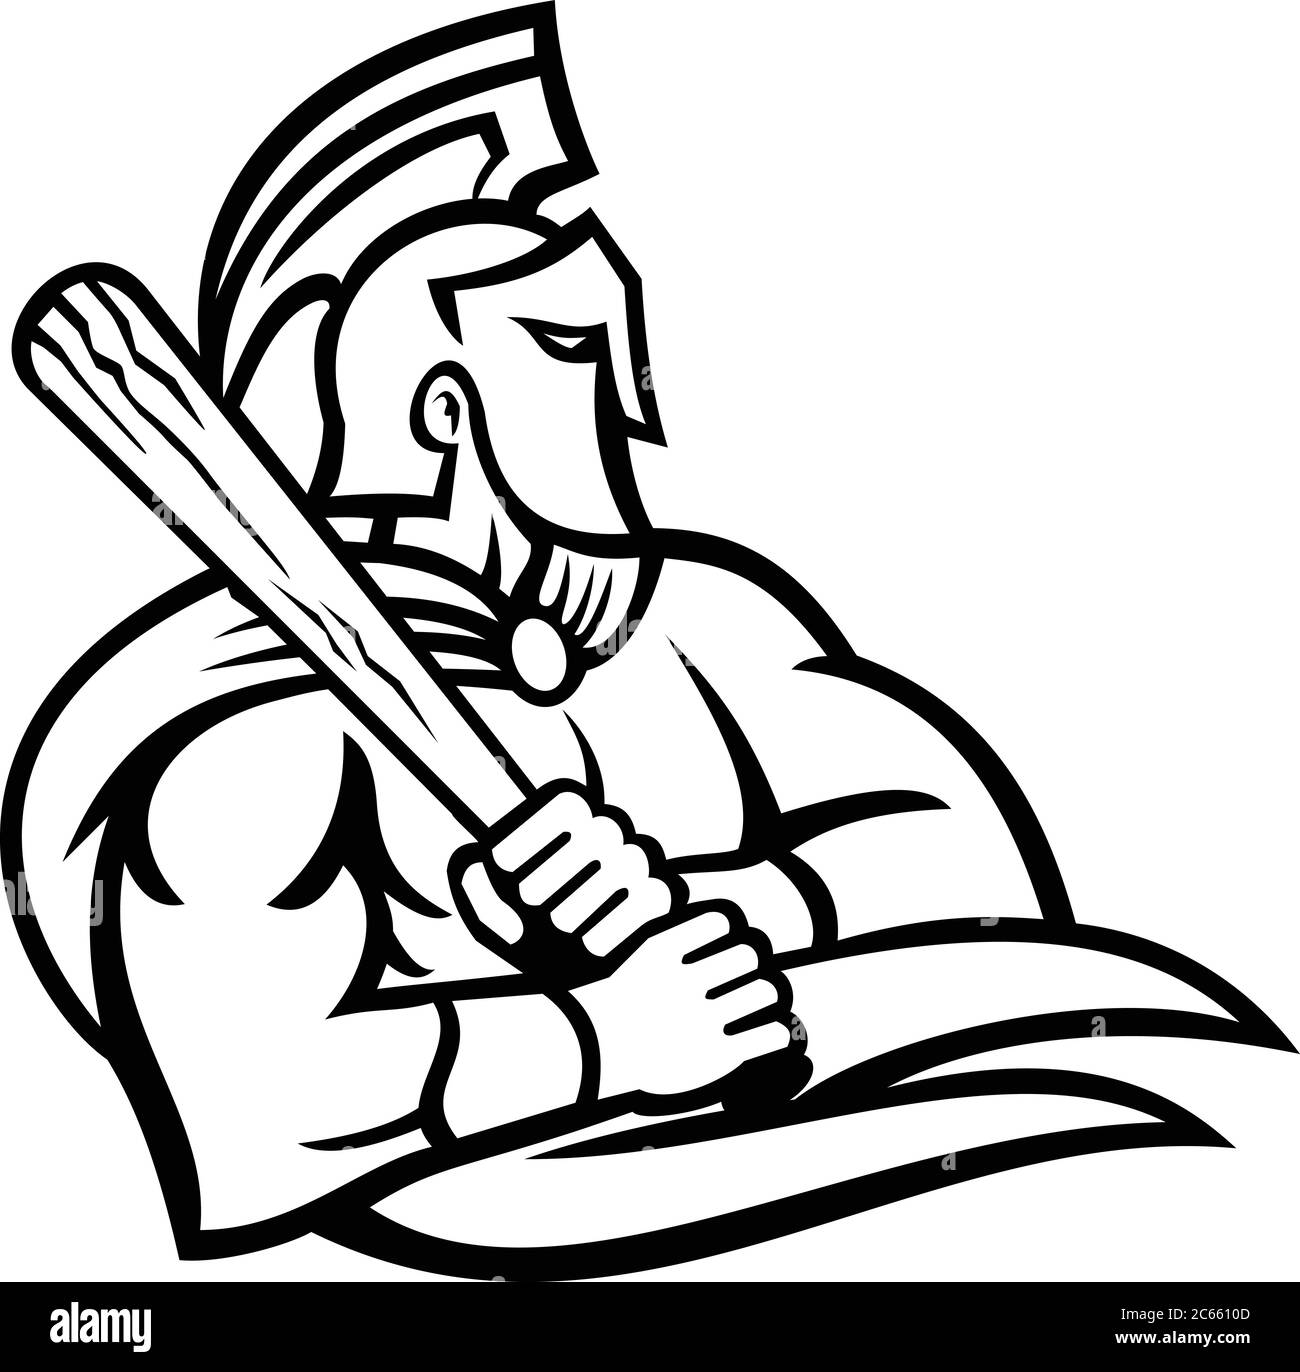 Mascotte noire et blanche, illustration de la tête d'un cheval de Troie ou d'un guerrier spartiate portant un casque et tenant une batte de baseball vue de côté sur une baba isolée Illustration de Vecteur